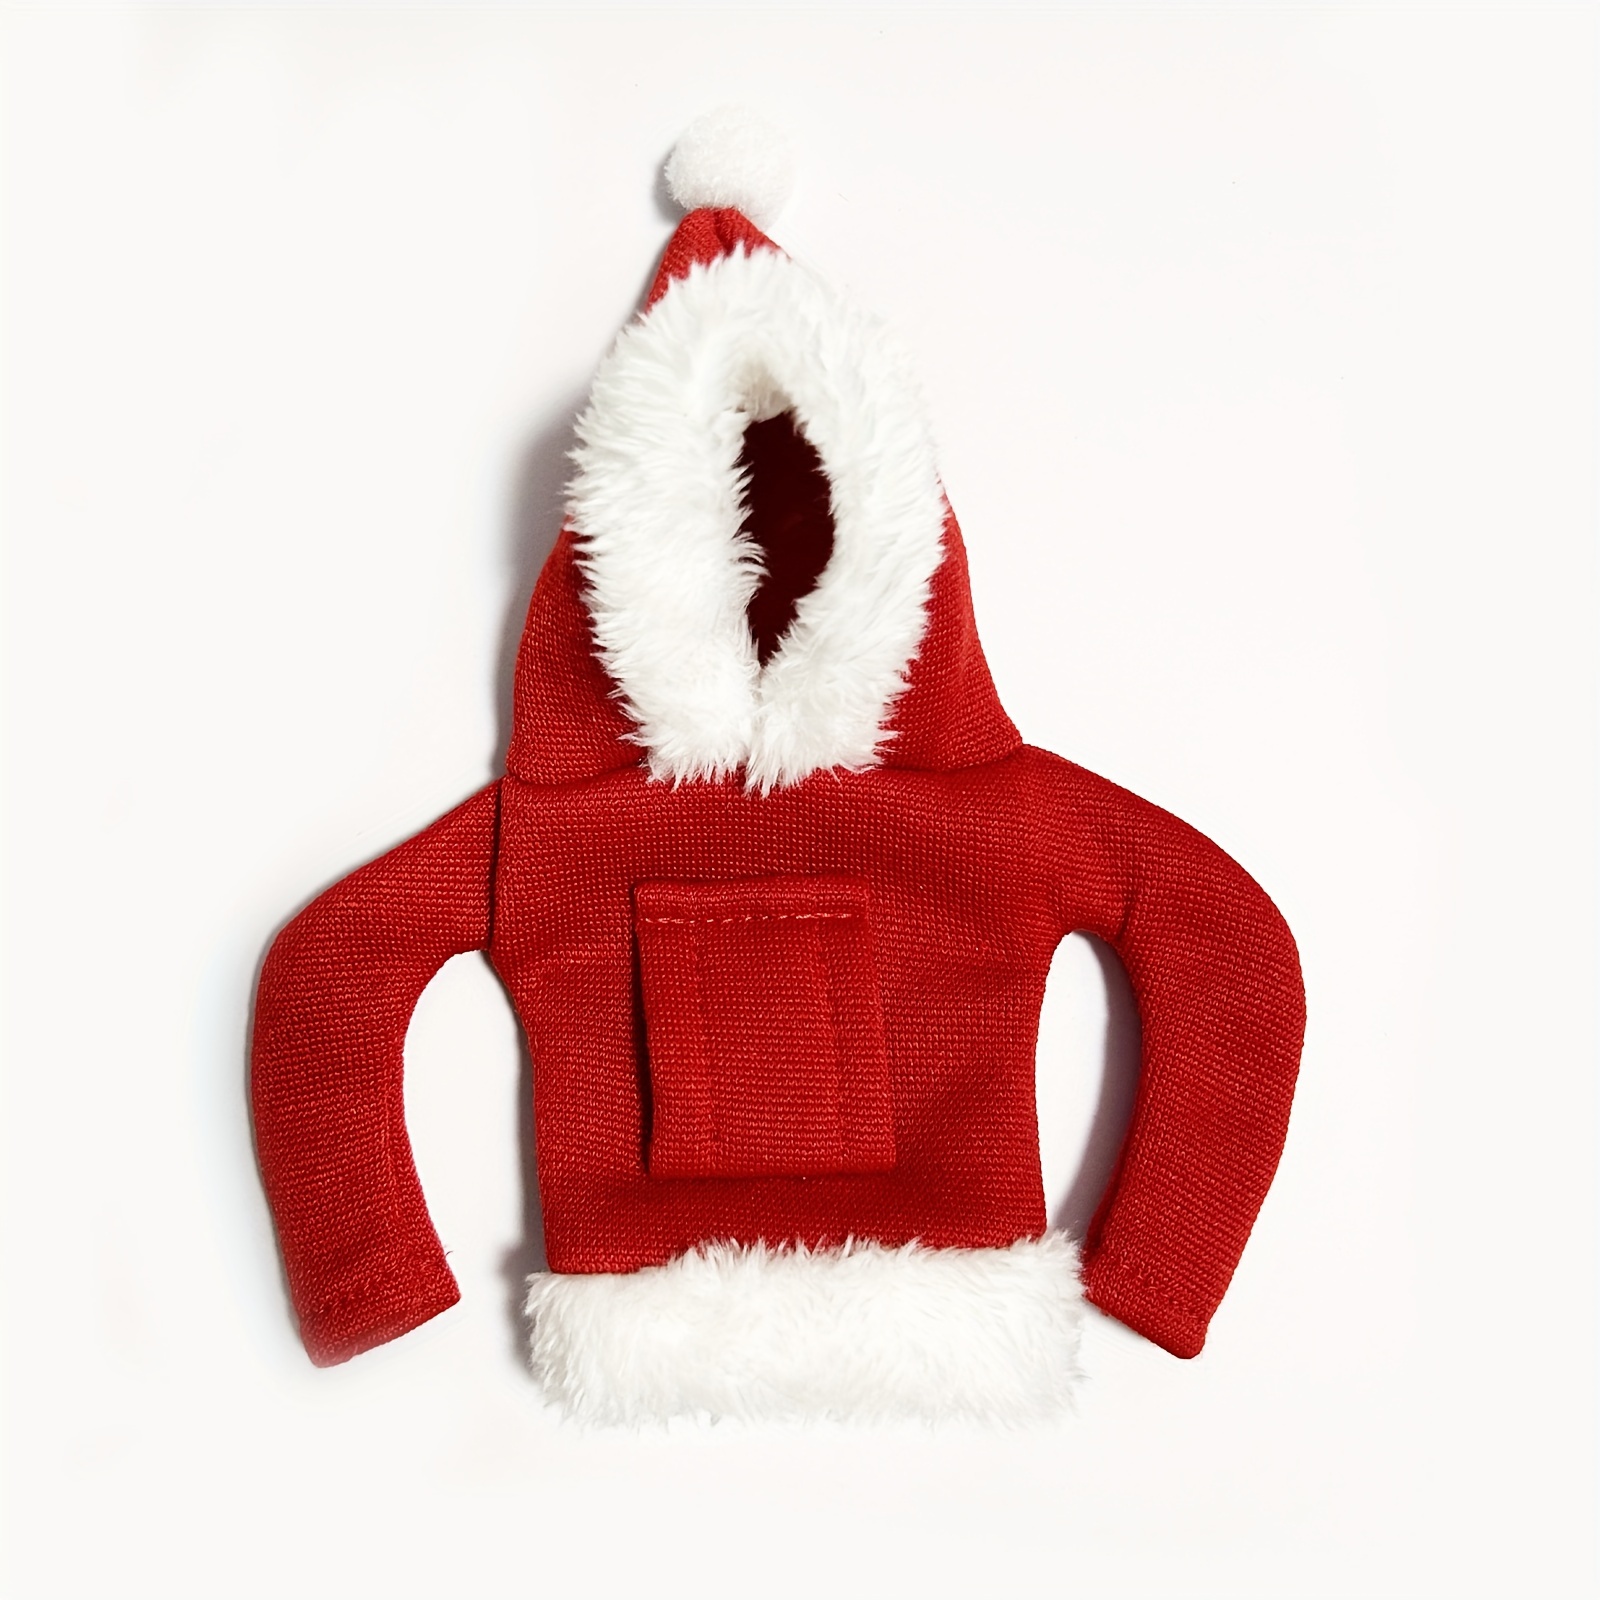 Mini Santa Claus Hoodie Car Gear Shift Cover Universal Gear - Temu